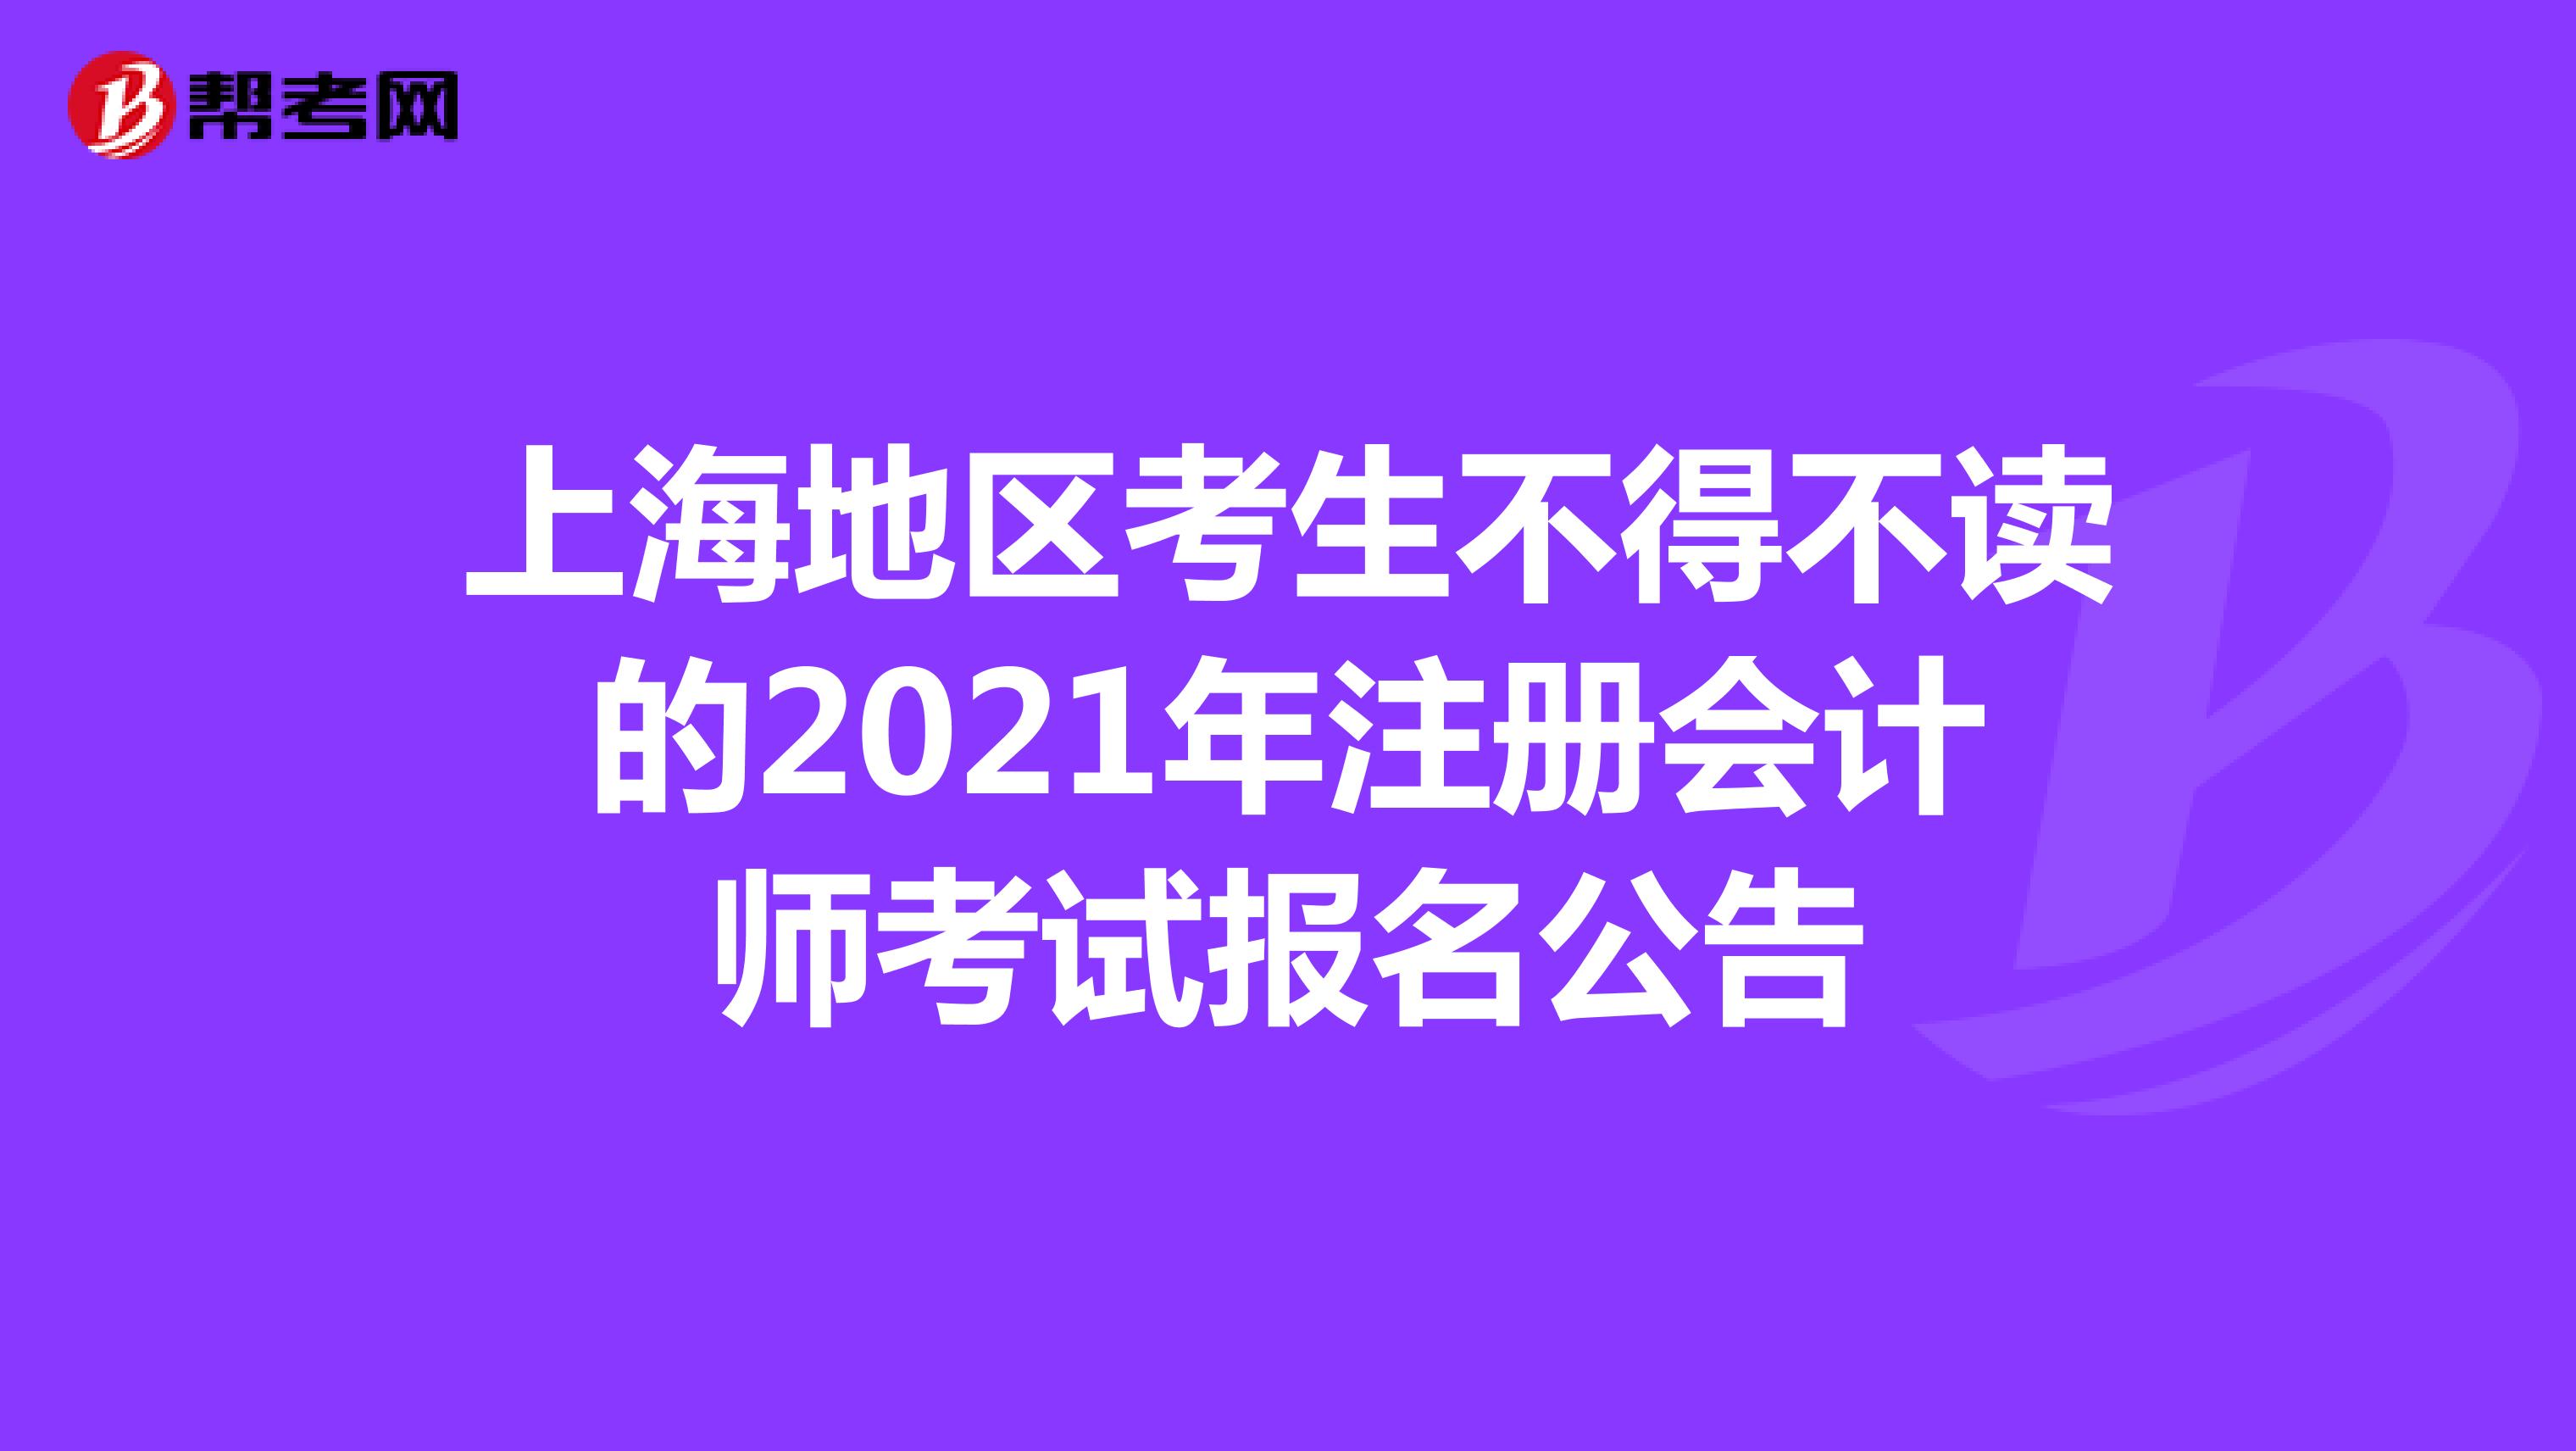 上海地区考生不得不读的2021年注册会计师考试报名公告